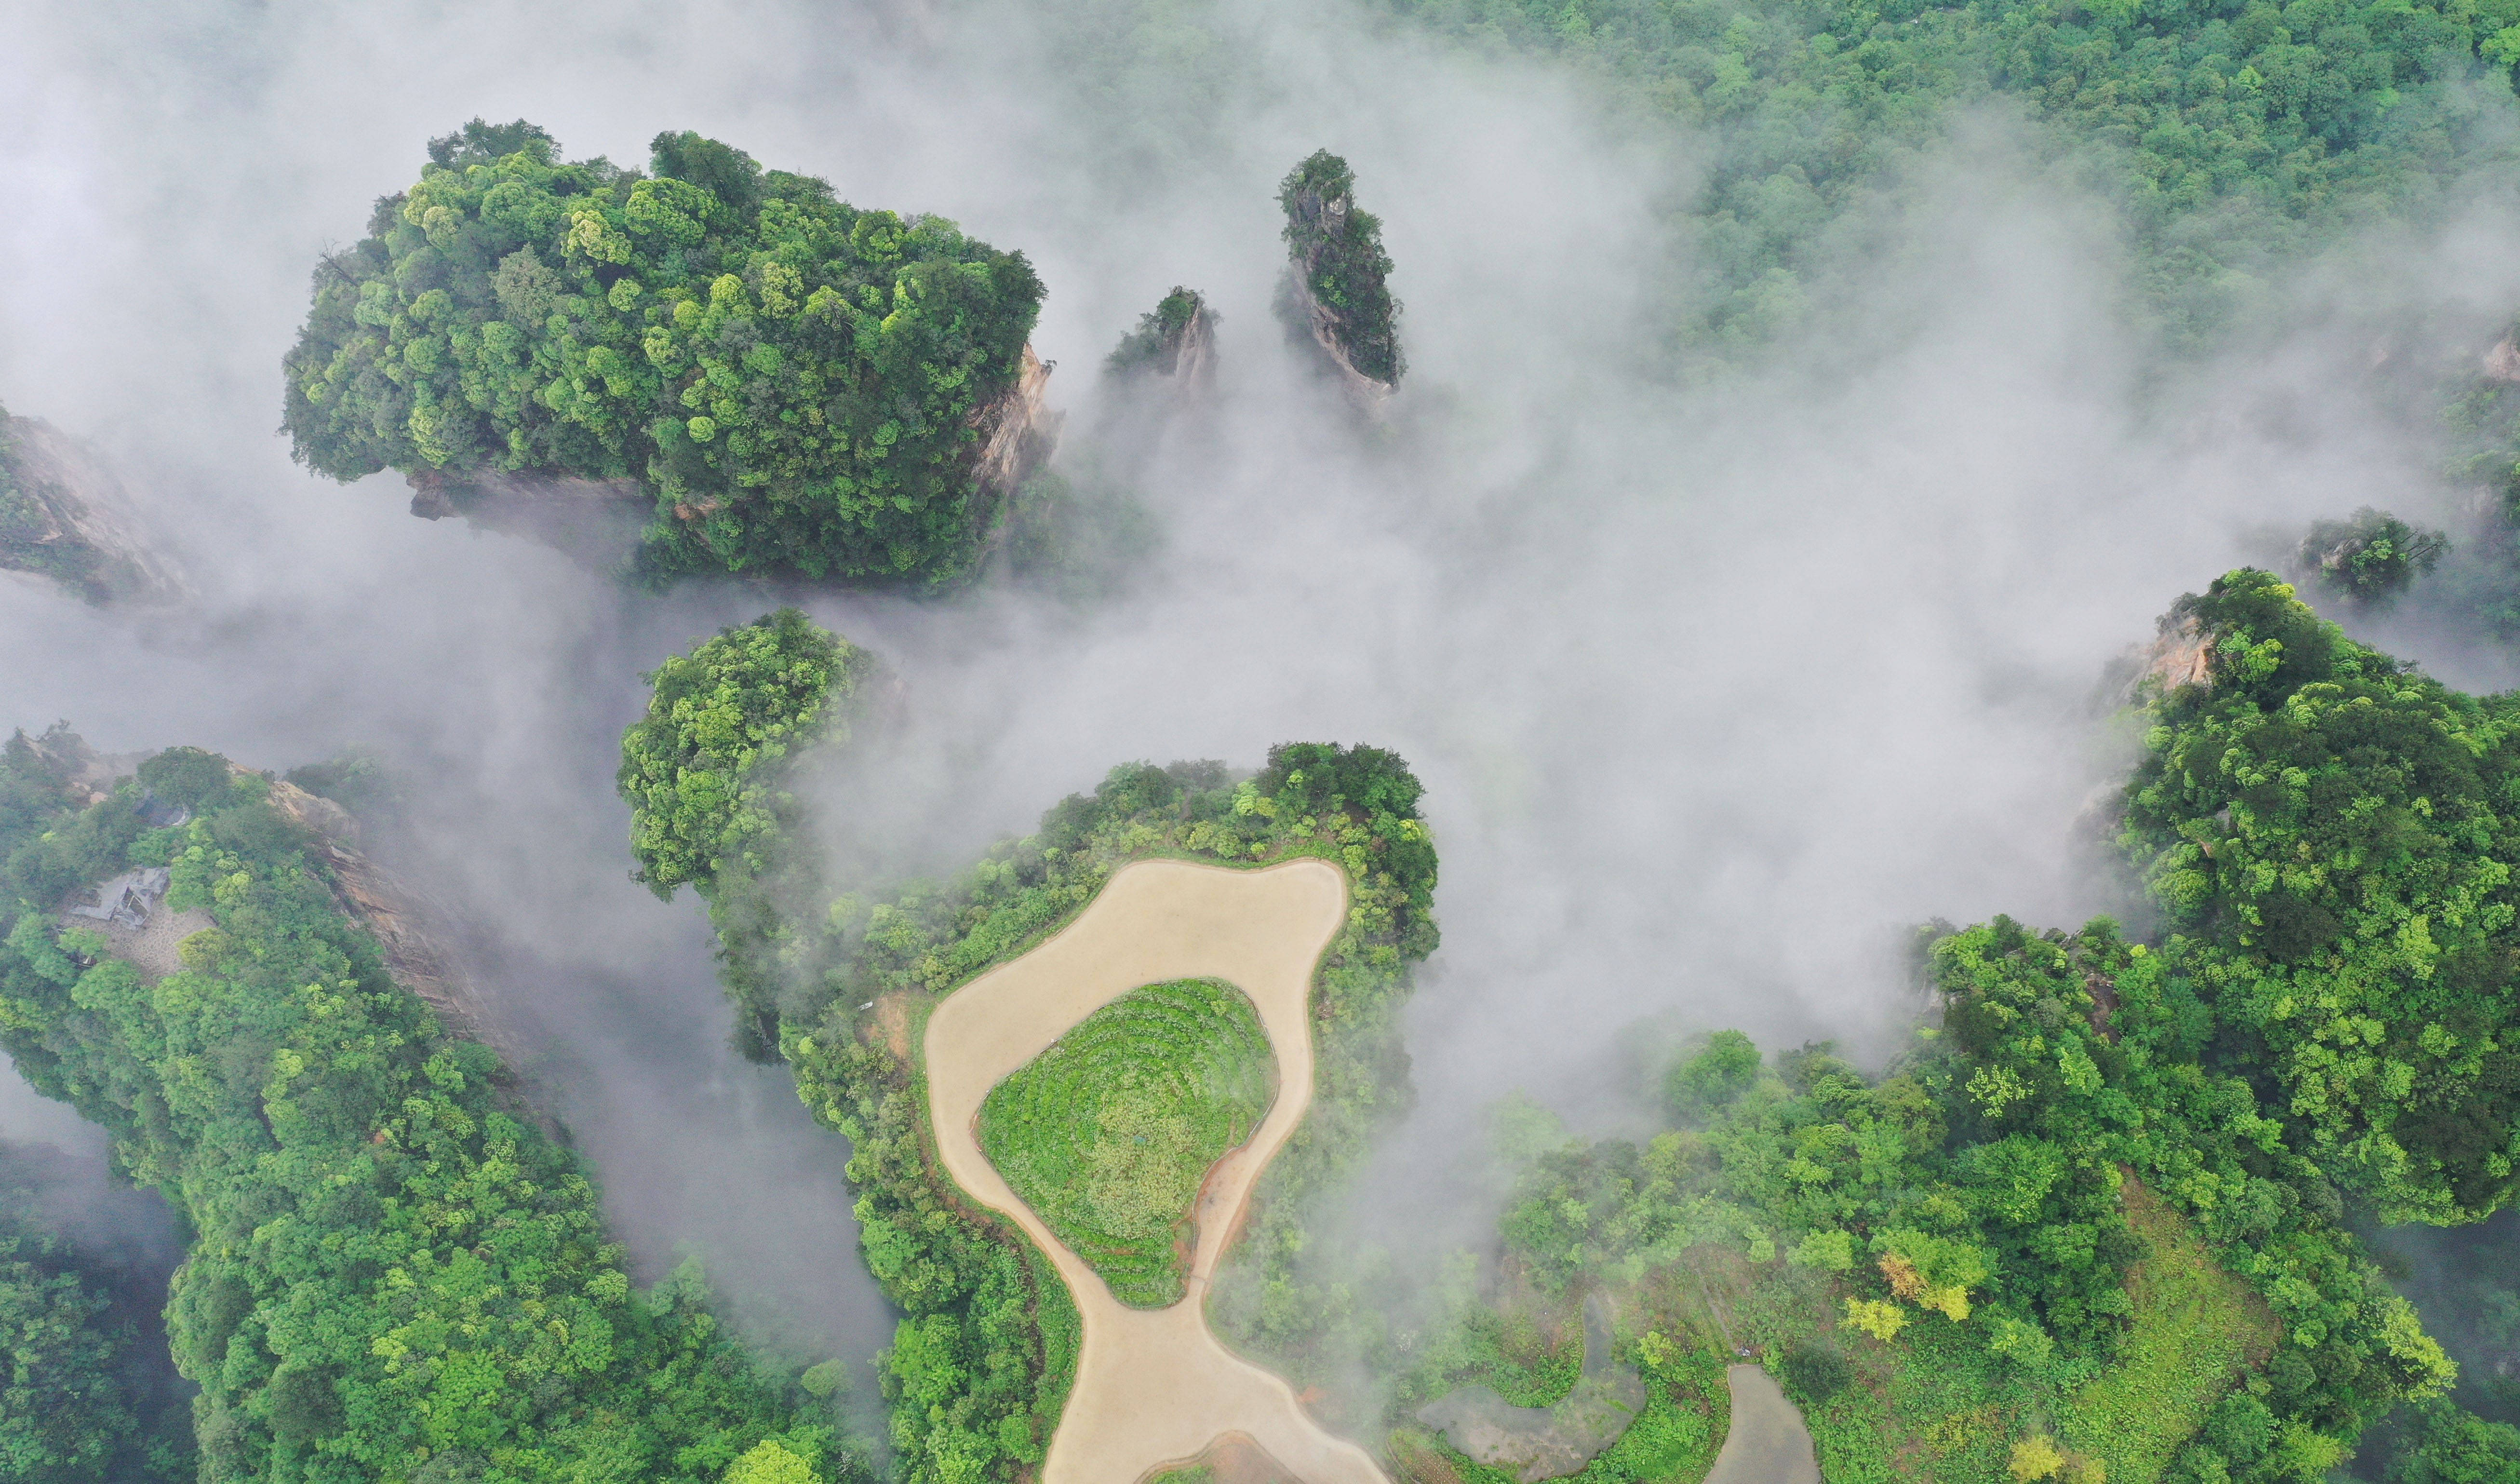 这是5月14日拍摄的张家界武陵源景区峰林云海景观(无人机照片) 